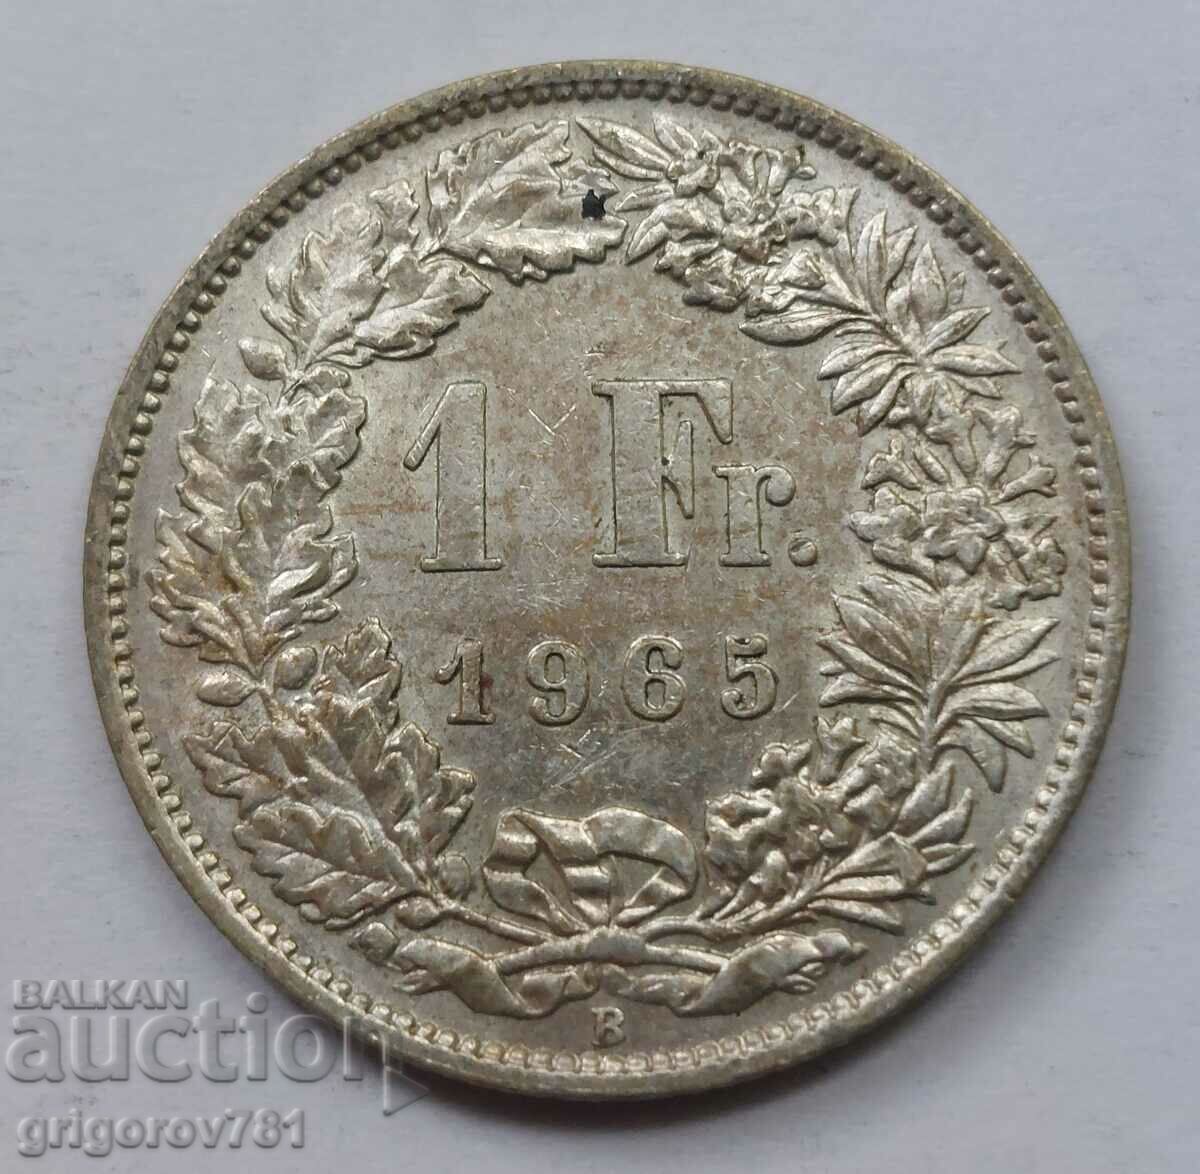 Ασημένιο 1 Φράγκο Ελβετία 1965 Β - Ασημένιο νόμισμα #33